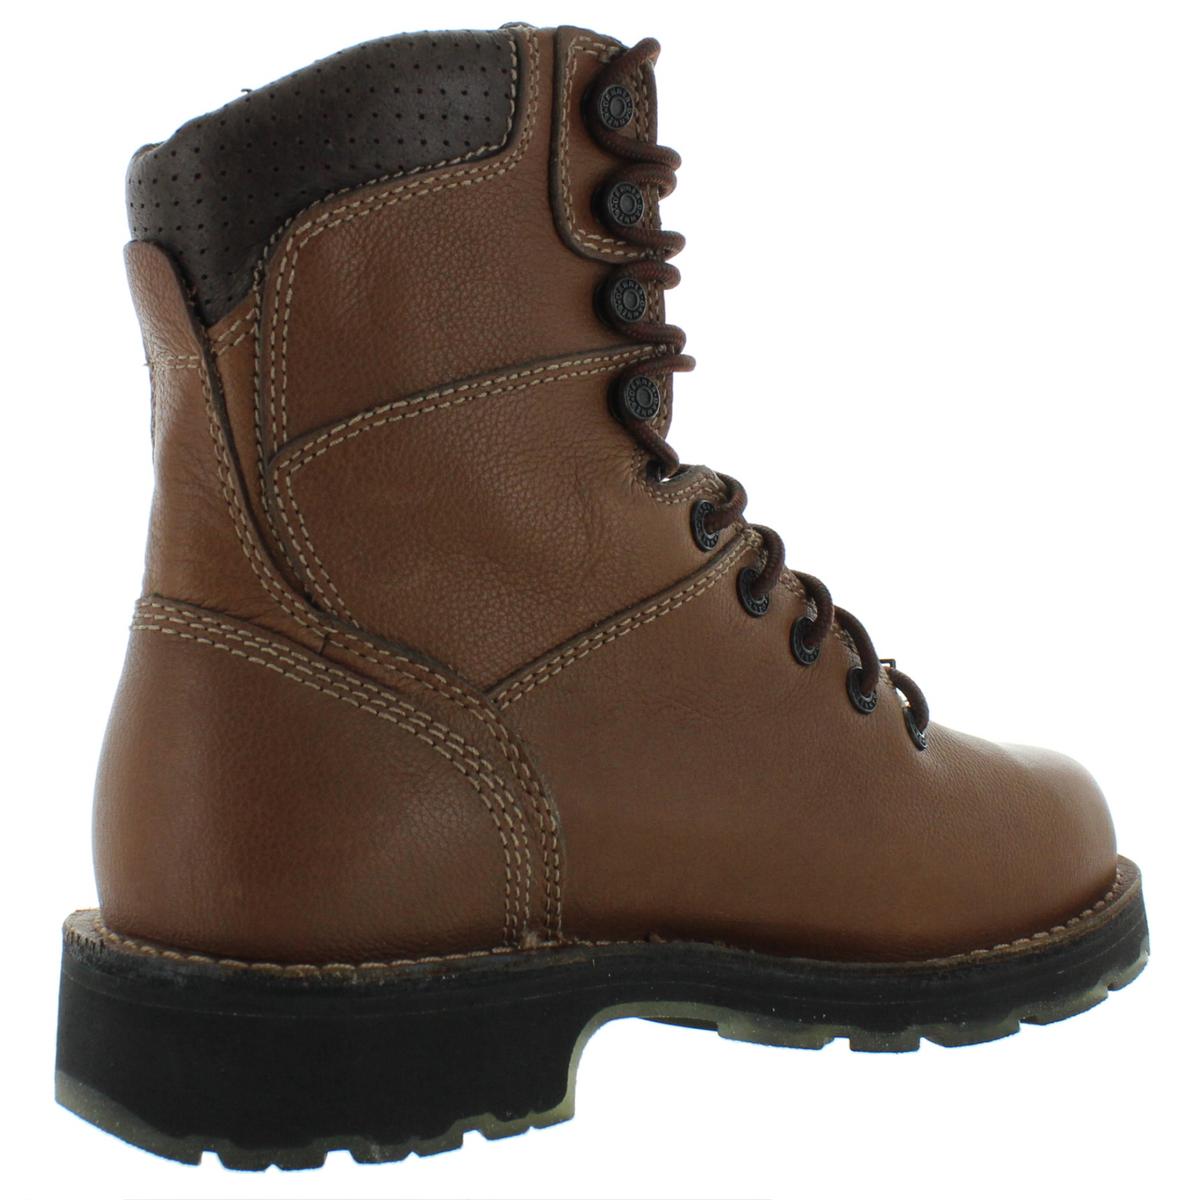 Danner Mens Brown Leather Vibram Combat Boots Shoes 8 Medium (D) BHFO ...